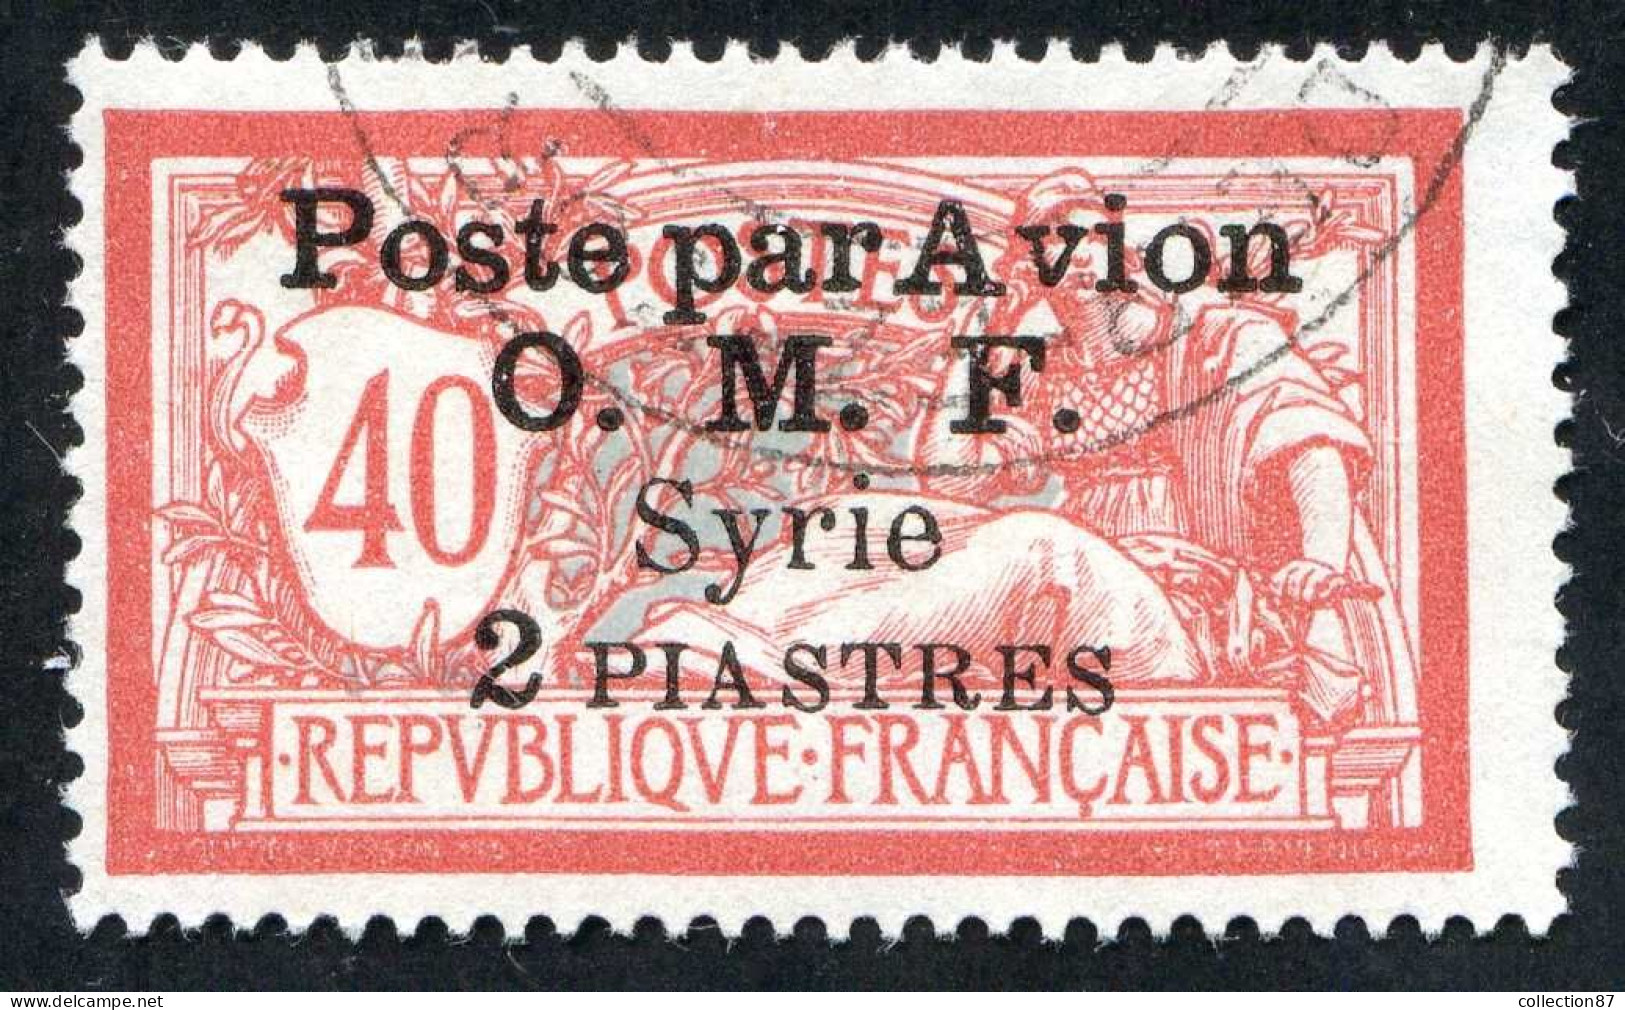 REF 086 > SYRIE < PA N° 10 > Ø < Oblitéré < Ø Used > Poste Aérienne - Aéro - Air Mail - Aéreo